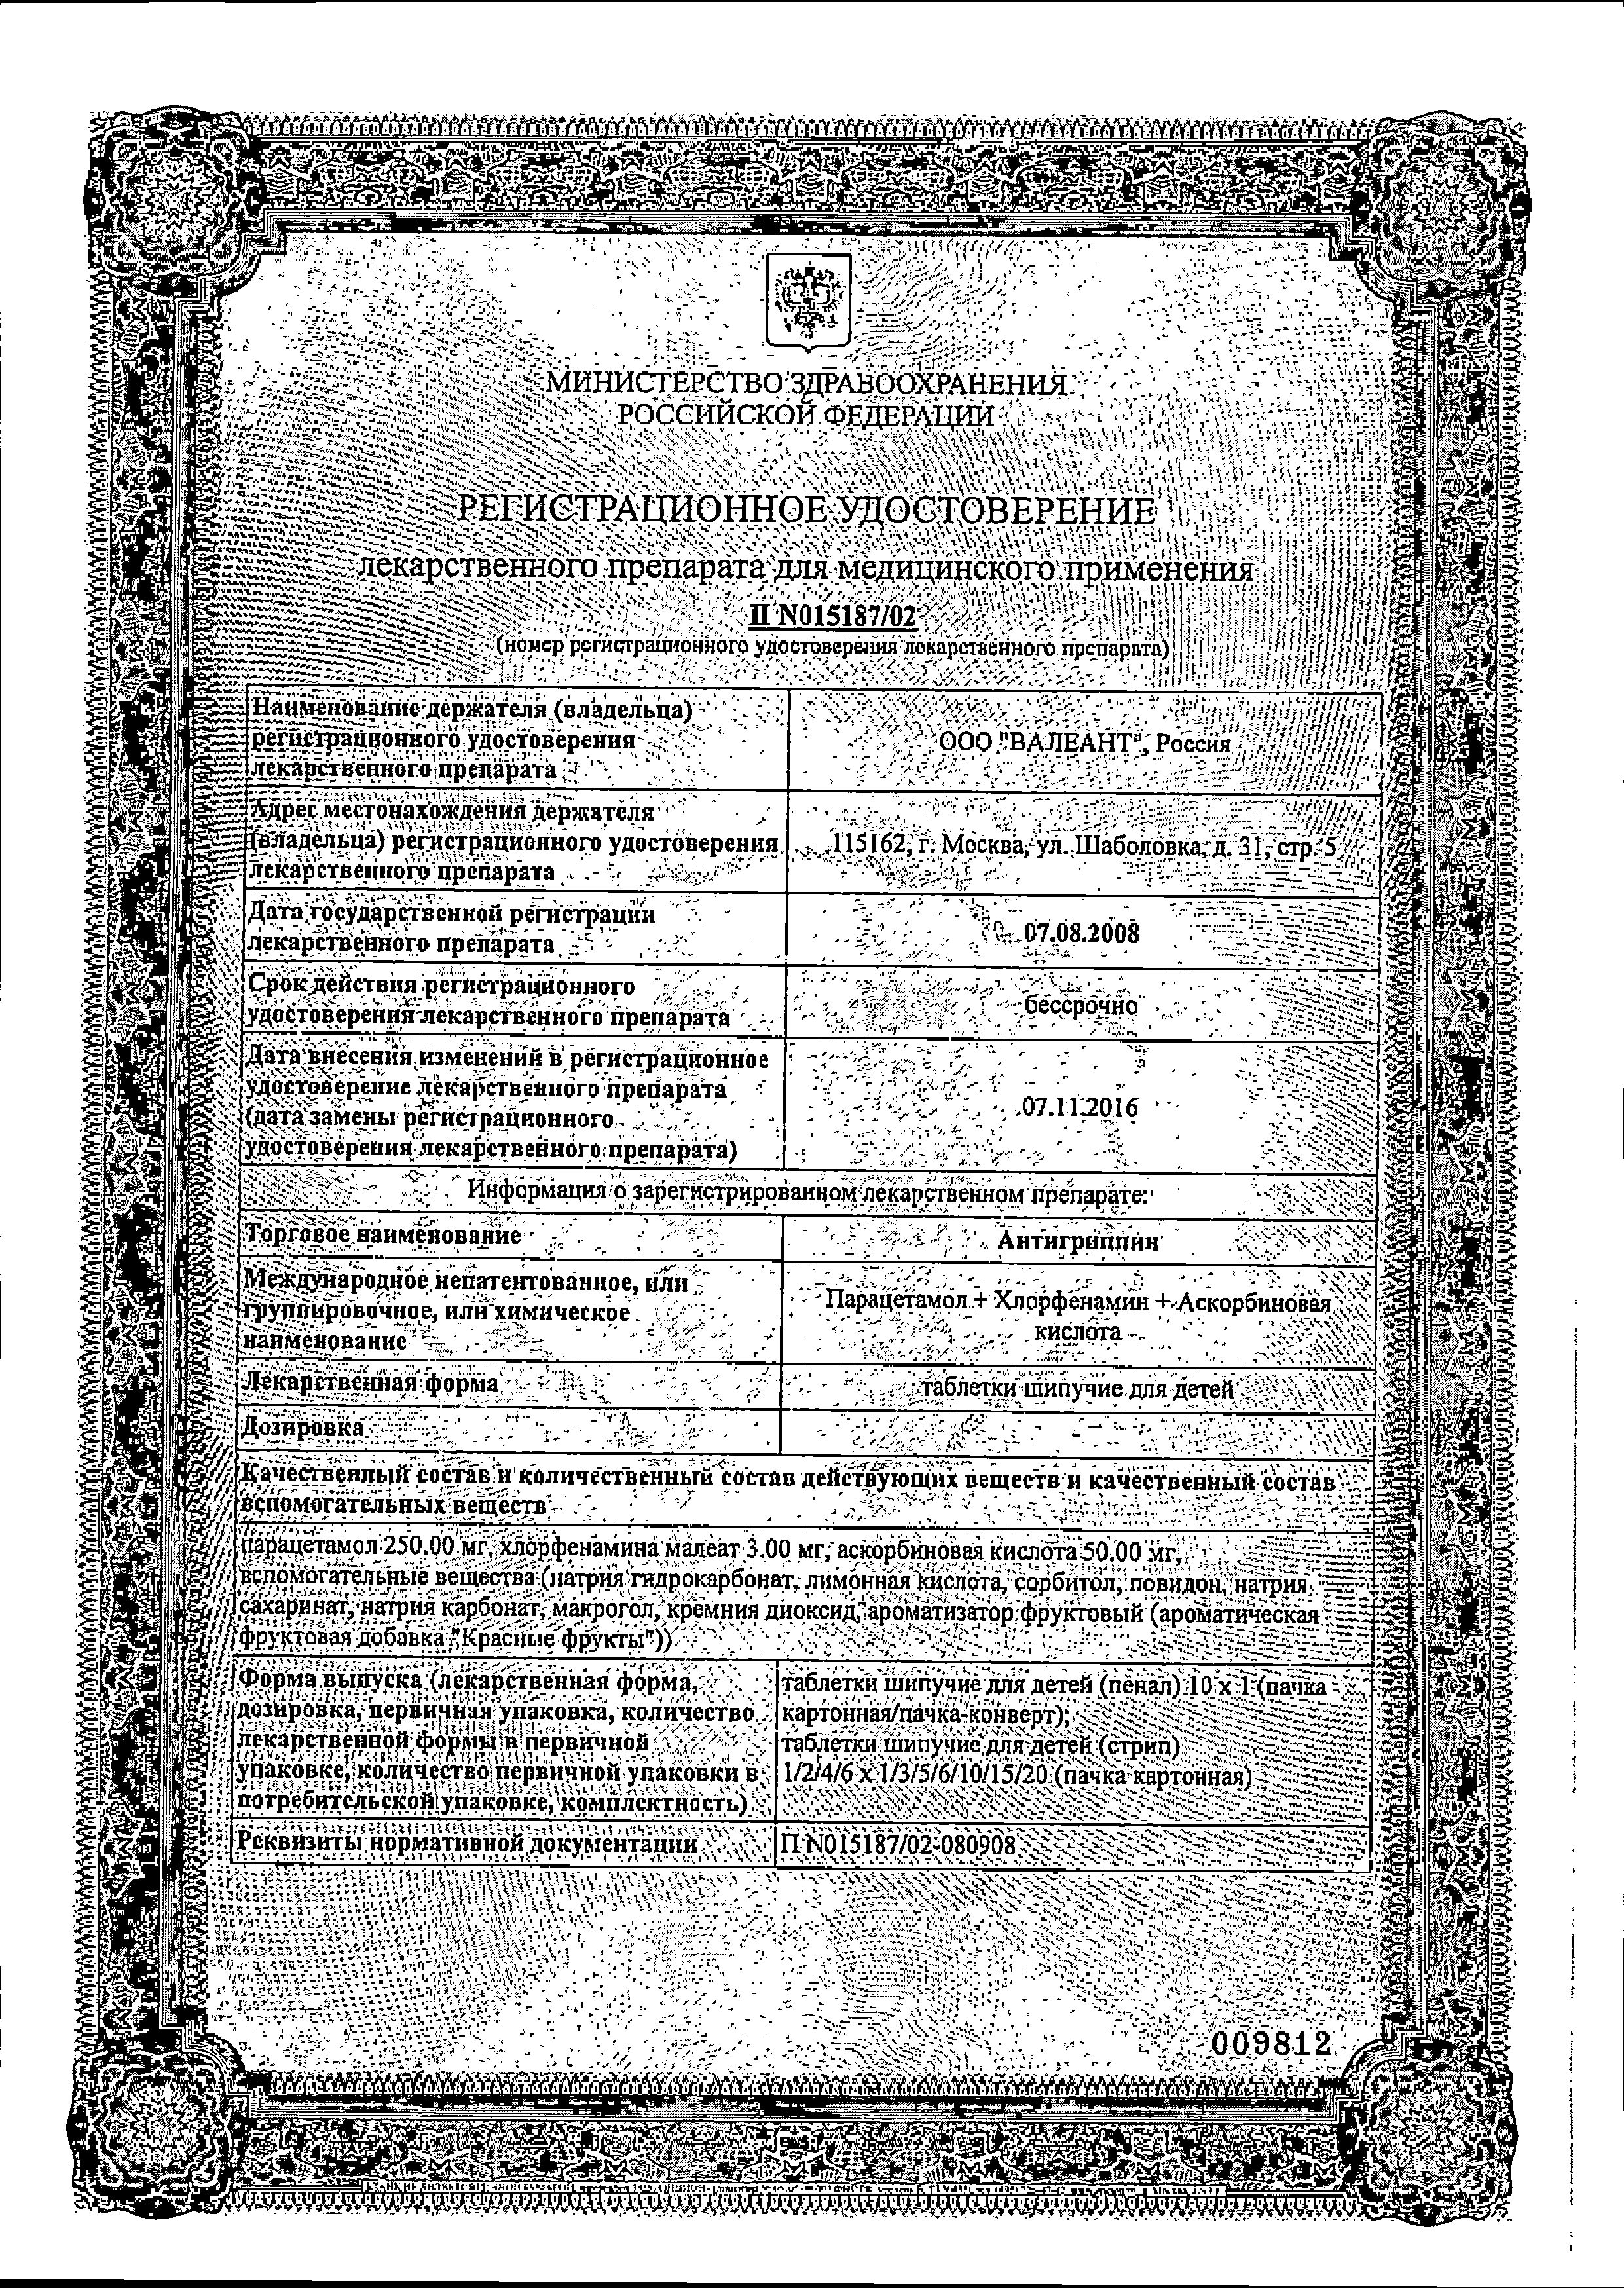 Антигриппин сертификат